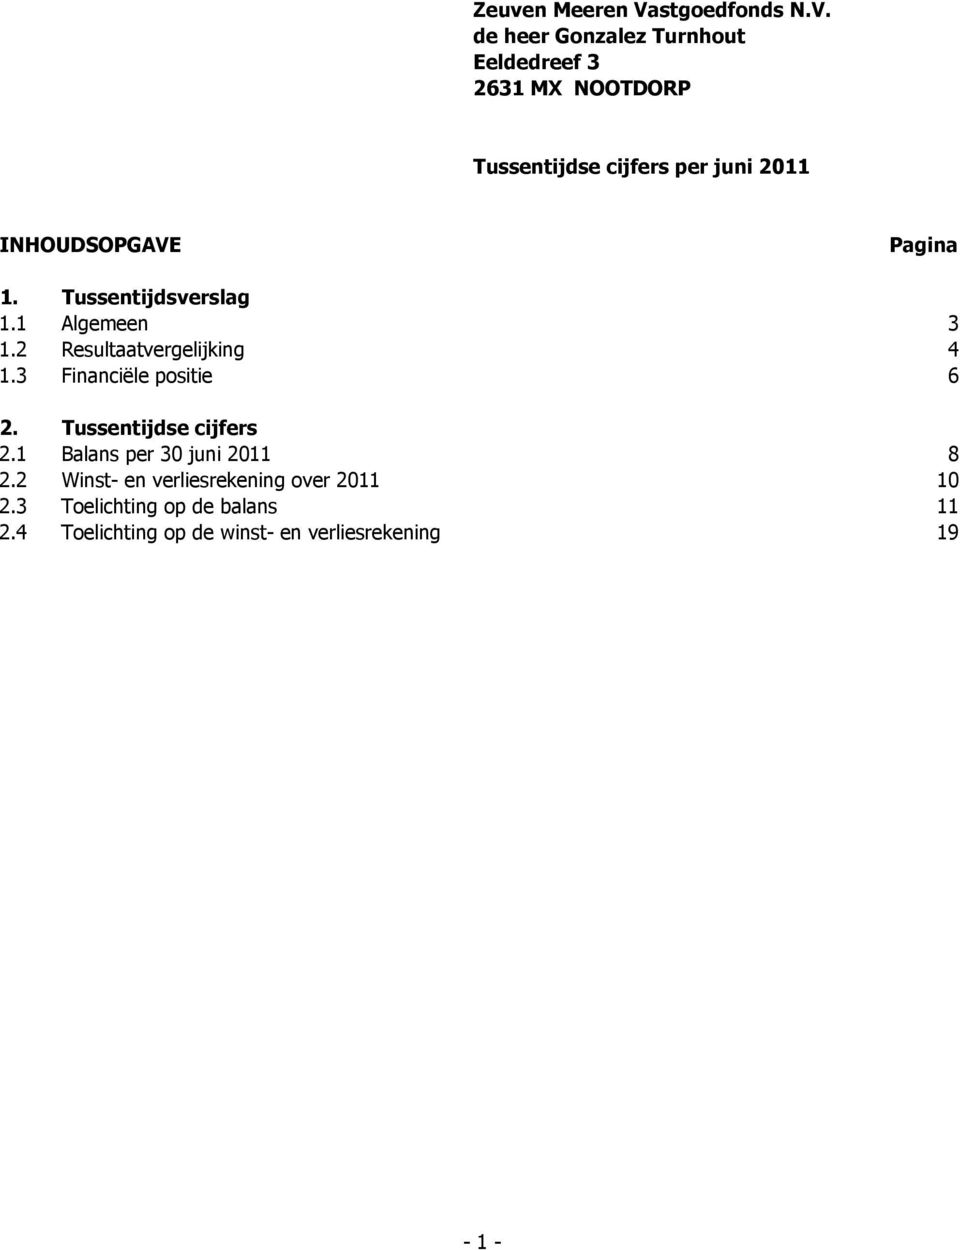 de heer Gonzalez Turnhout Eeldedreef 3 2631 MX NOOTDORP Tussentijdse cijfers per juni 2011 INHOUDSOPGAVE